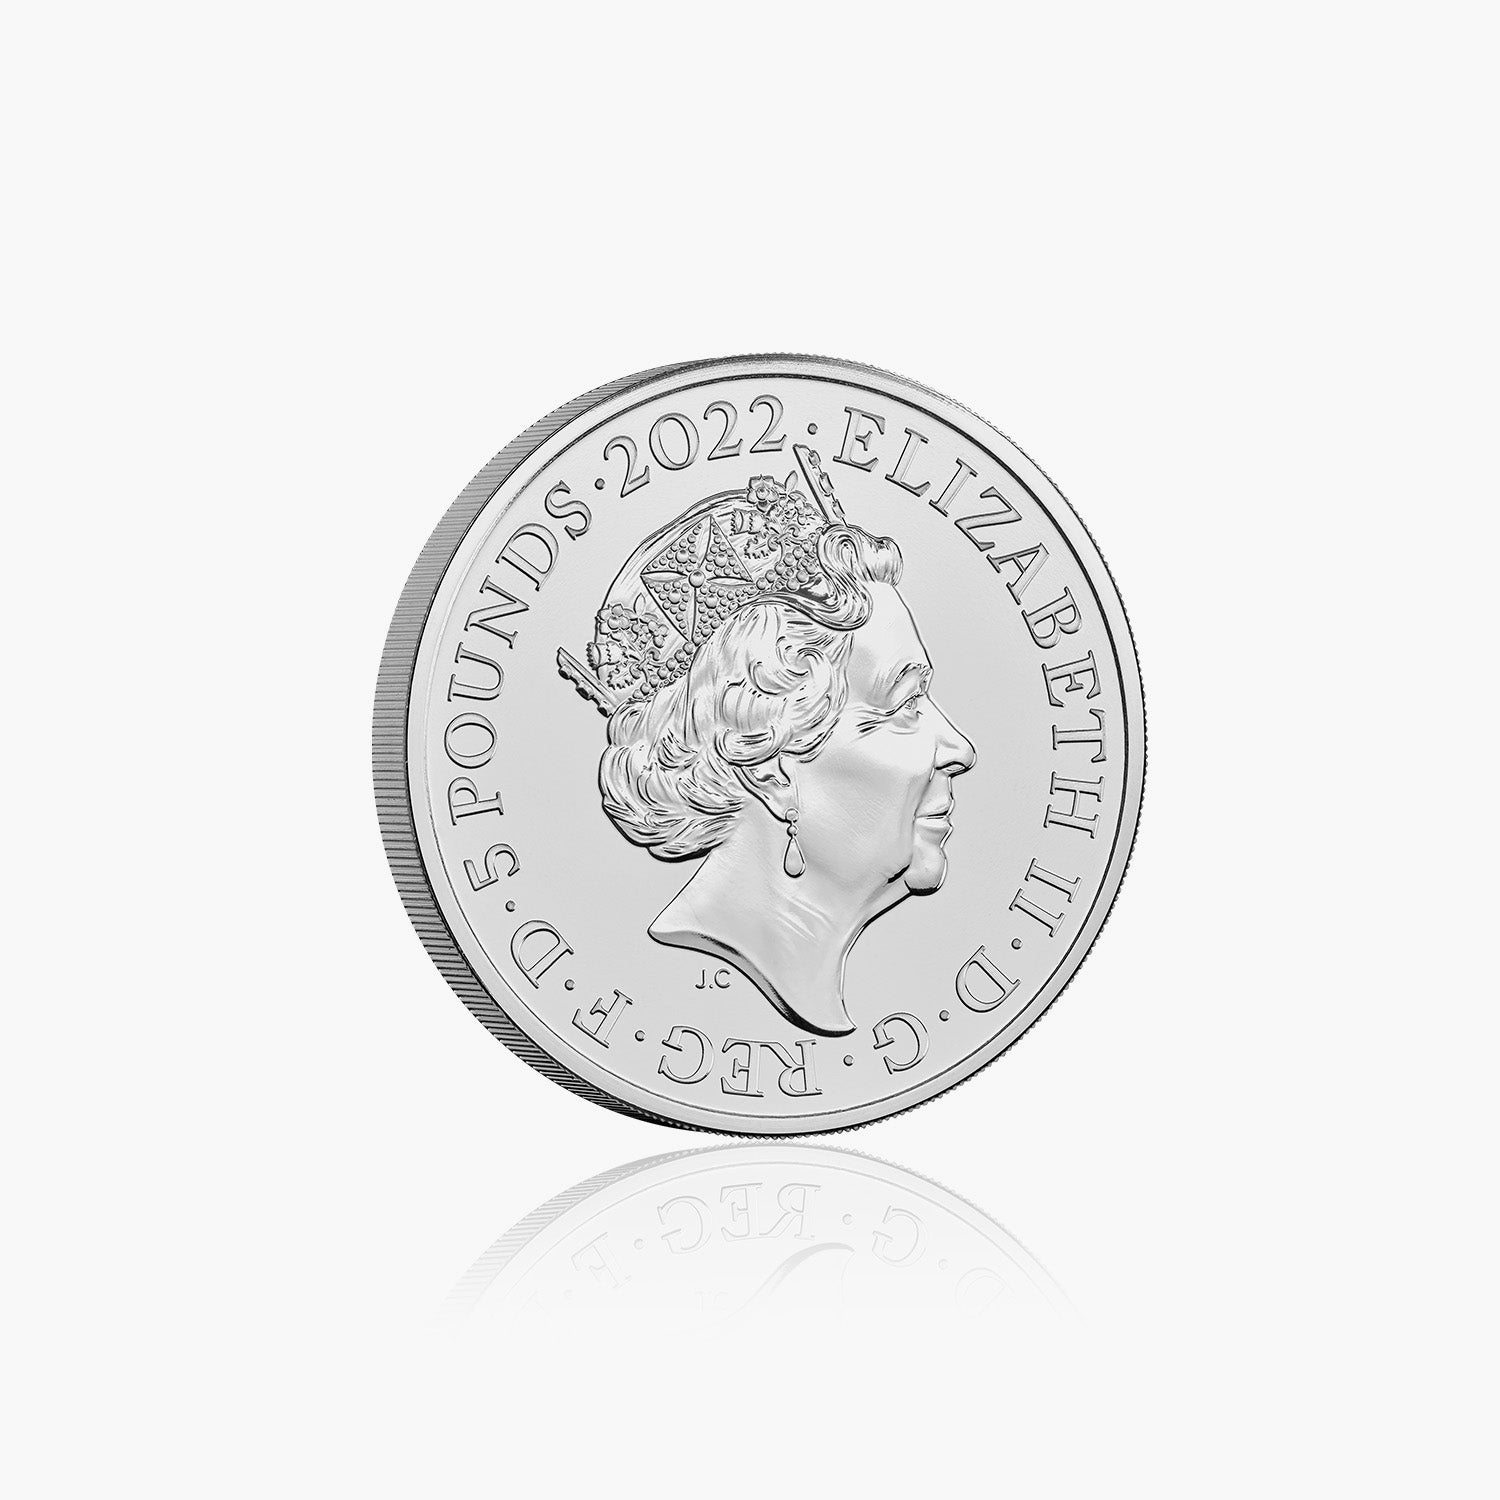 女王の治世の名誉と投資 2022 英国 £5 BU コイン